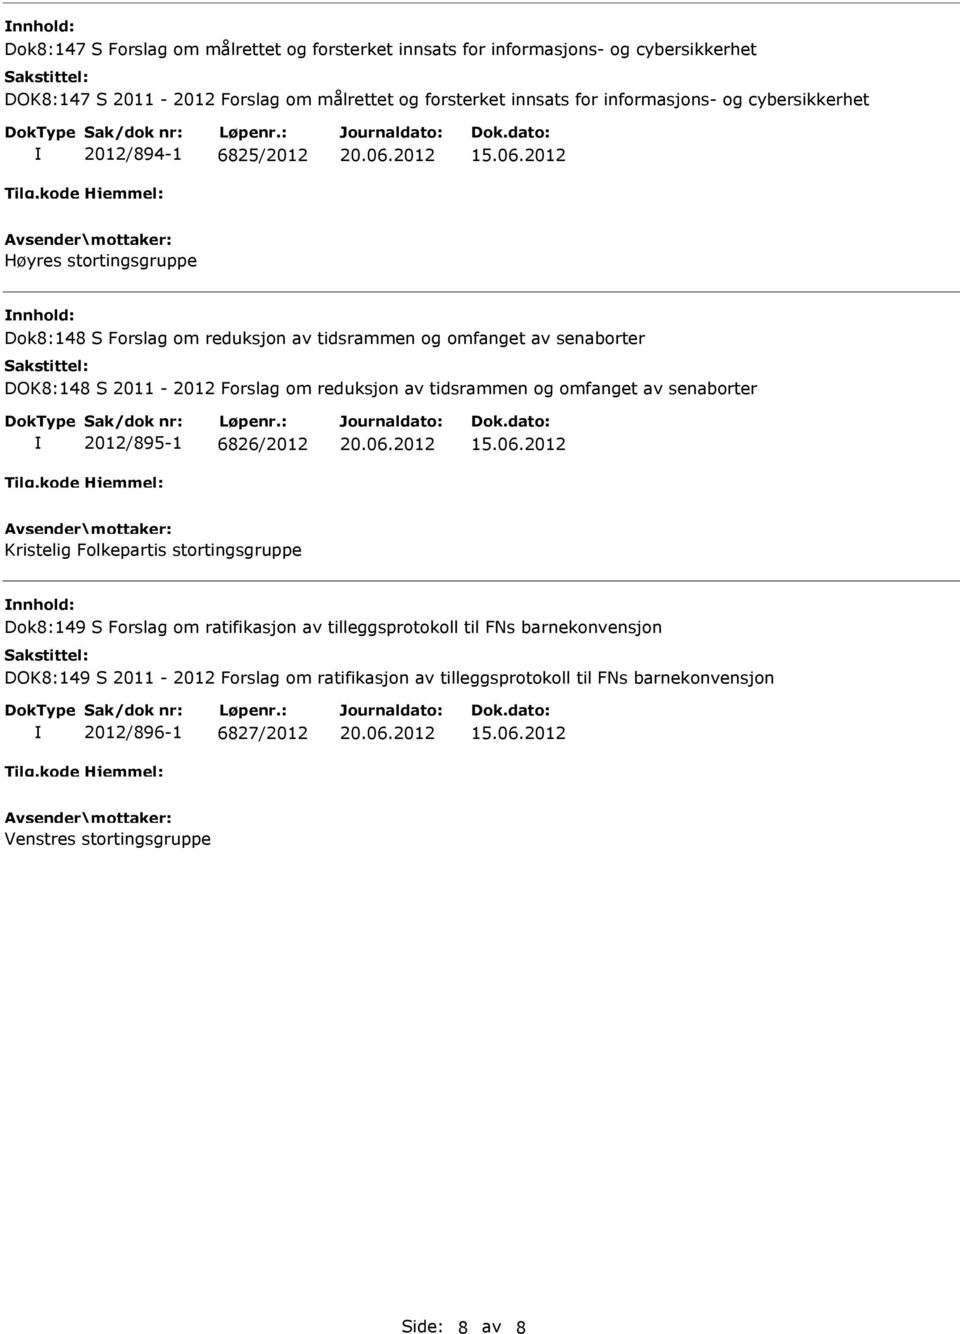 Forslag om reduksjon av tidsrammen og omfanget av senaborter 2012/895-1 6826/2012 Kristelig Folkepartis stortingsgruppe Dok8:149 S Forslag om ratifikasjon av